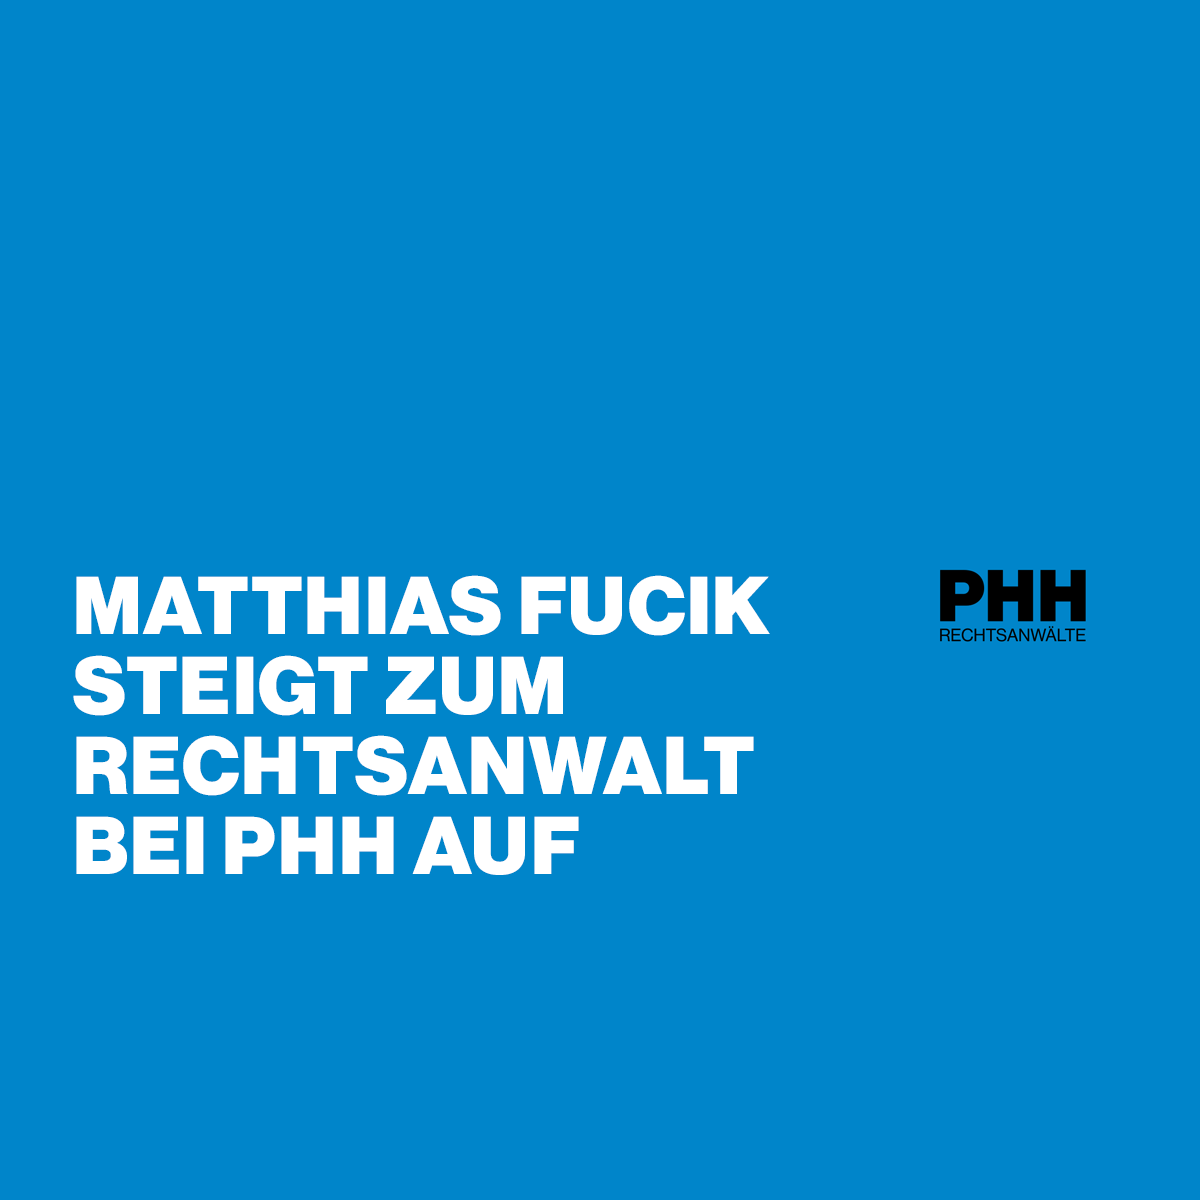 Matthias Fucik steigt zum Rechtsanwalt bei PHH auf